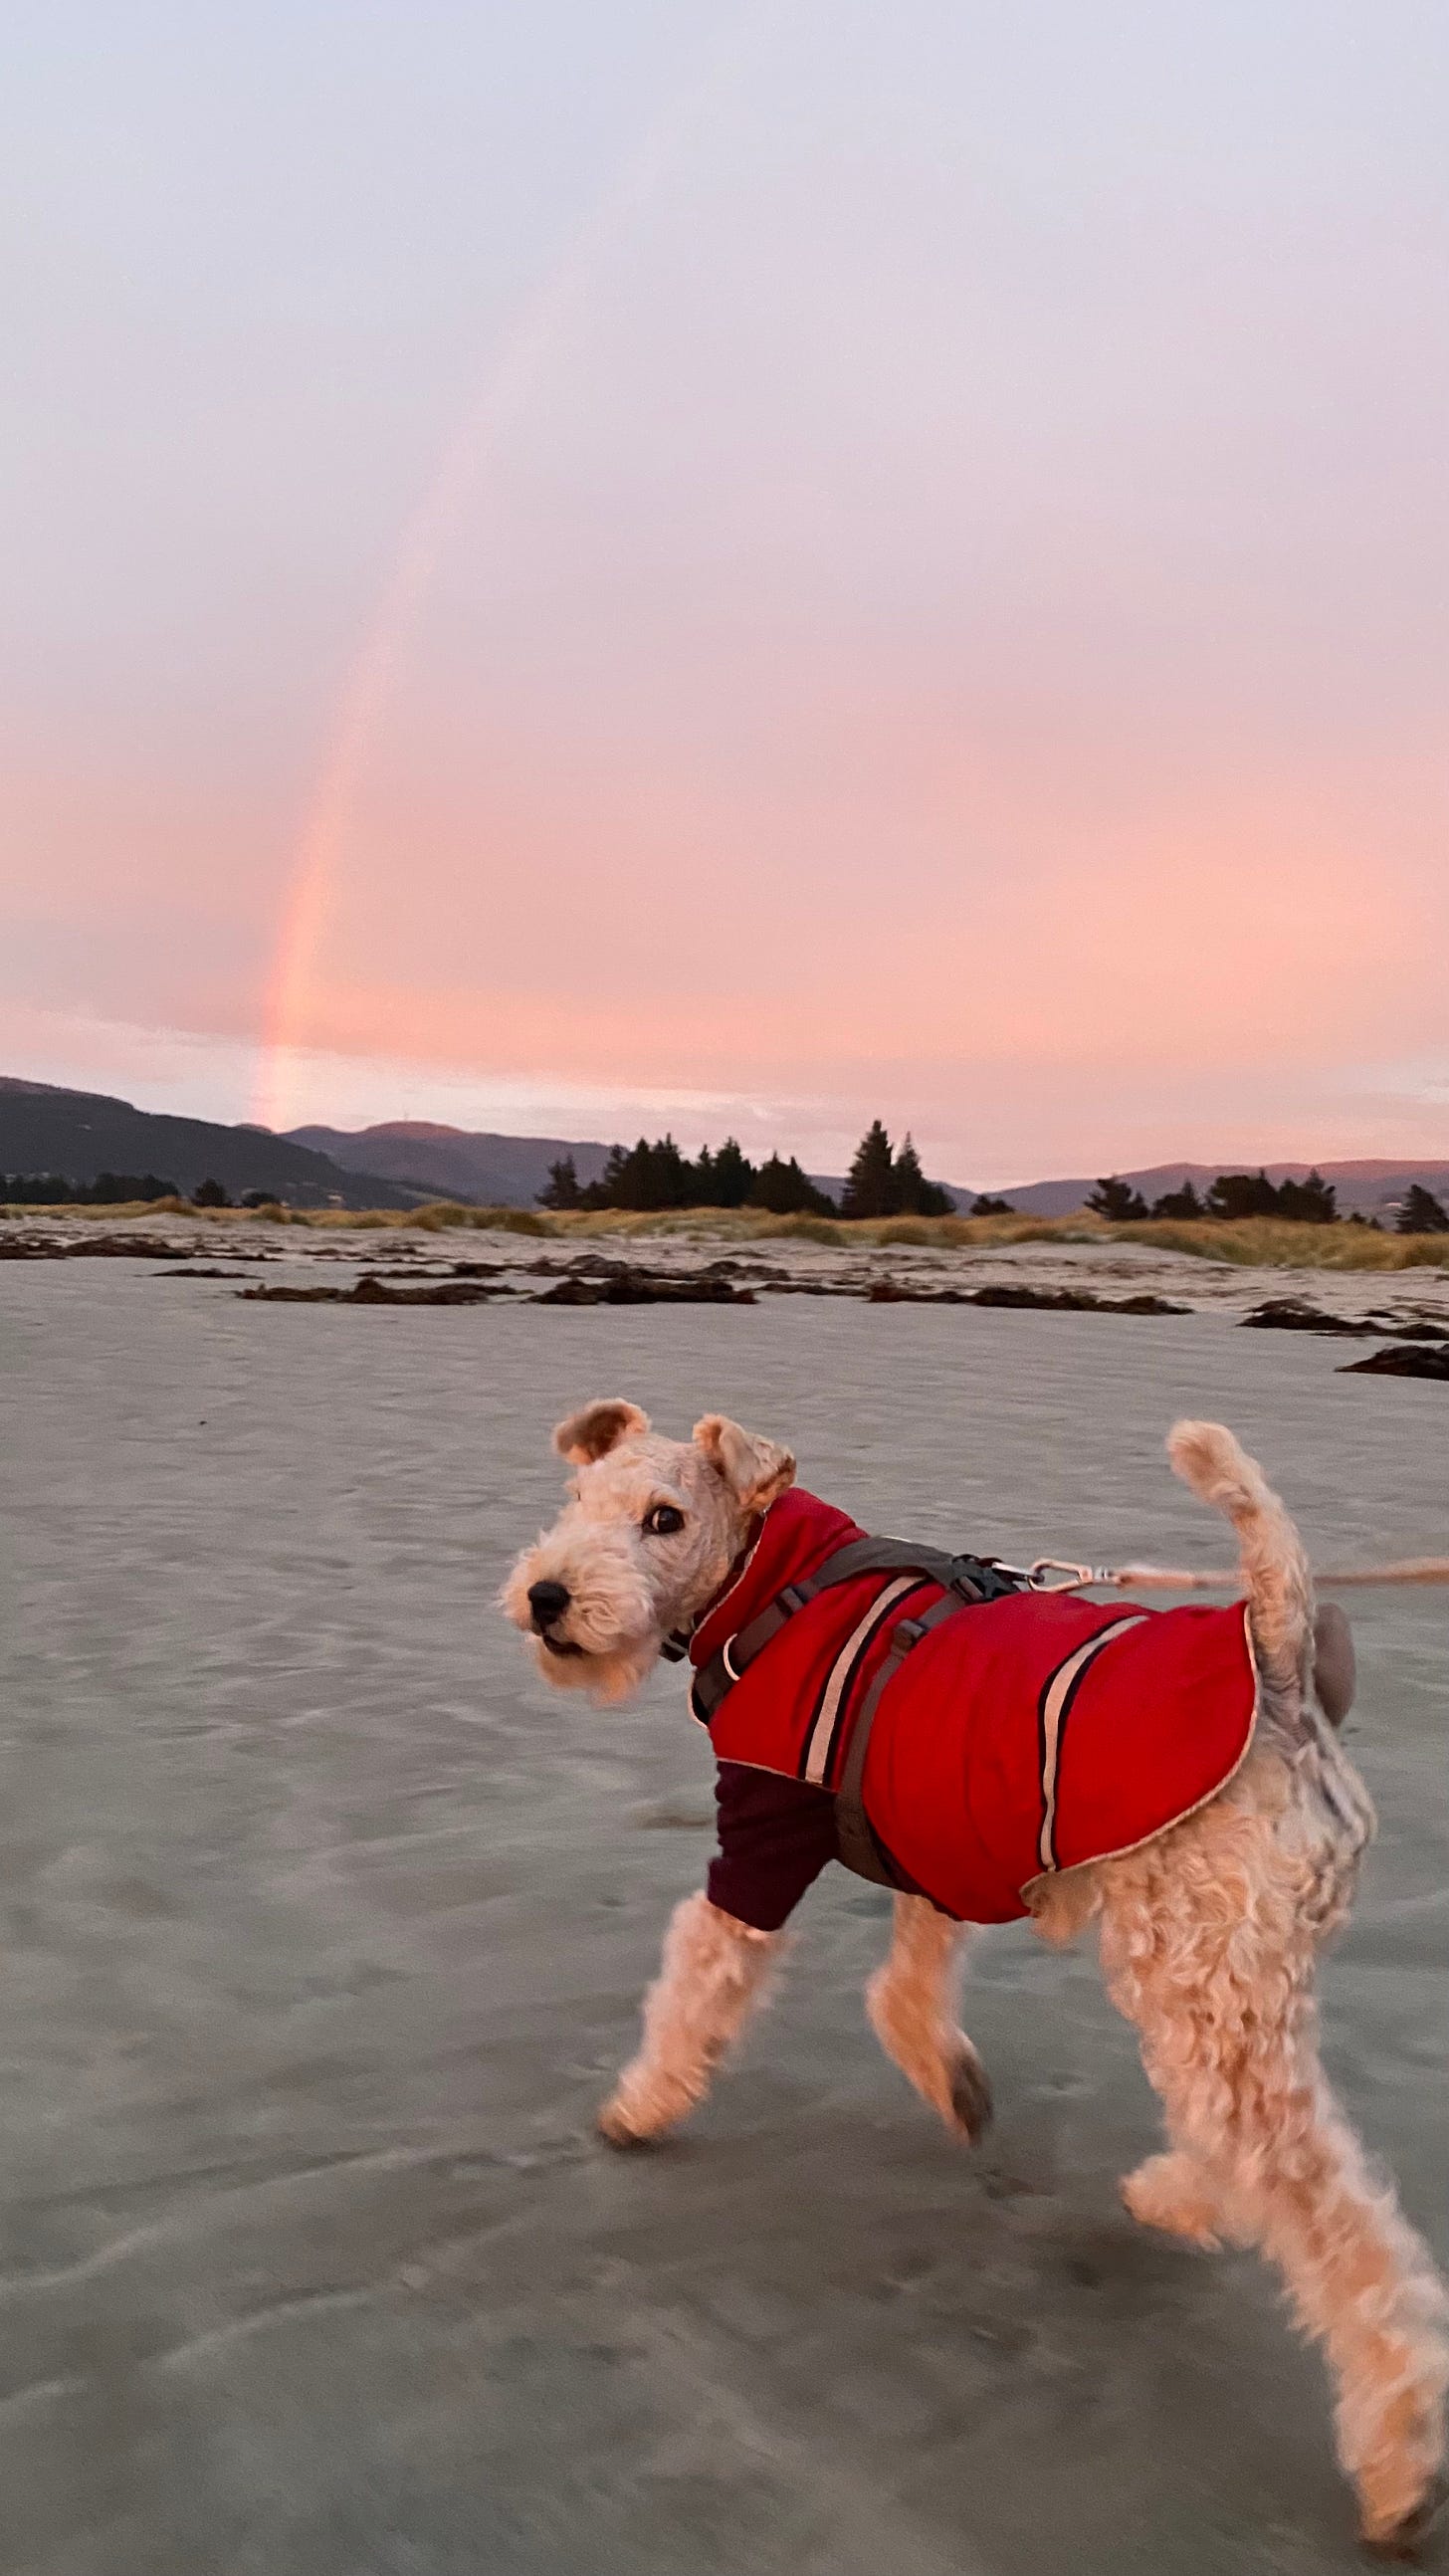 Nutmeg the lakeland terrier at the beach. In the sky is a faint rainbow.